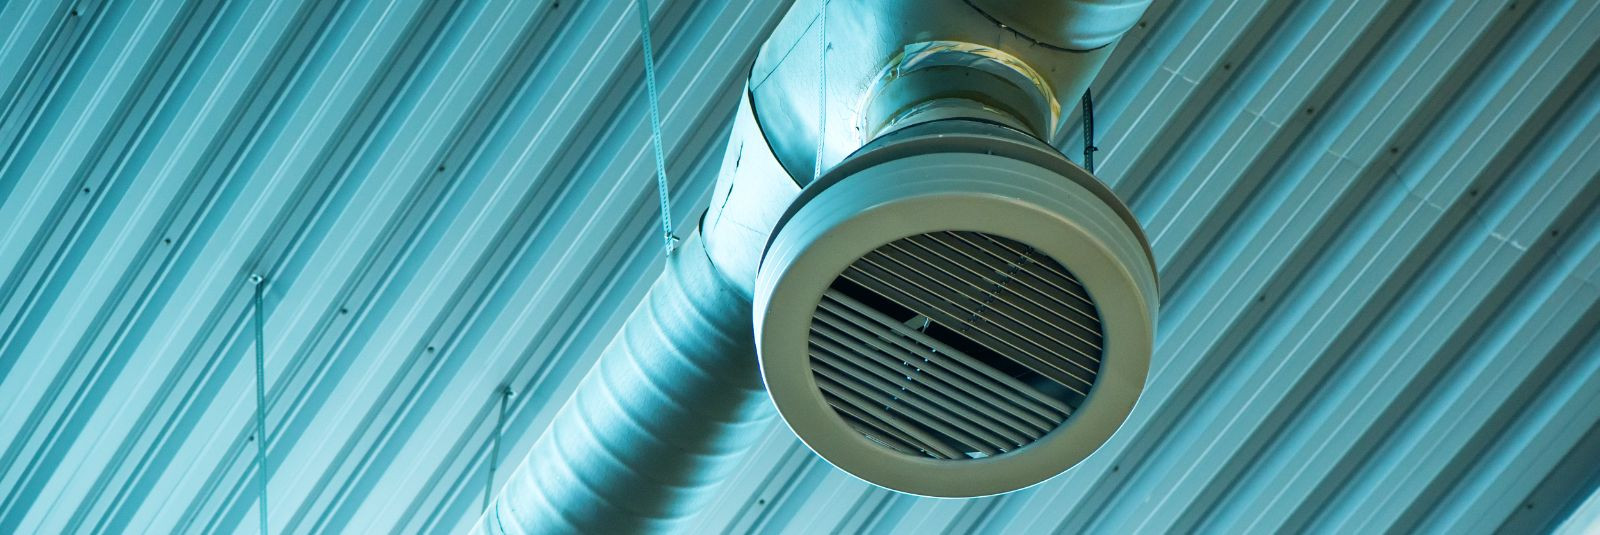 Kvaliteetne ja tõhus ventilatsioonisüsteem on oluline igasuguses hoones, olgu selleks siis kodu, äriettevõte või tootmishoone. ETNOEHITUS OÜ on spetsialiseerunu